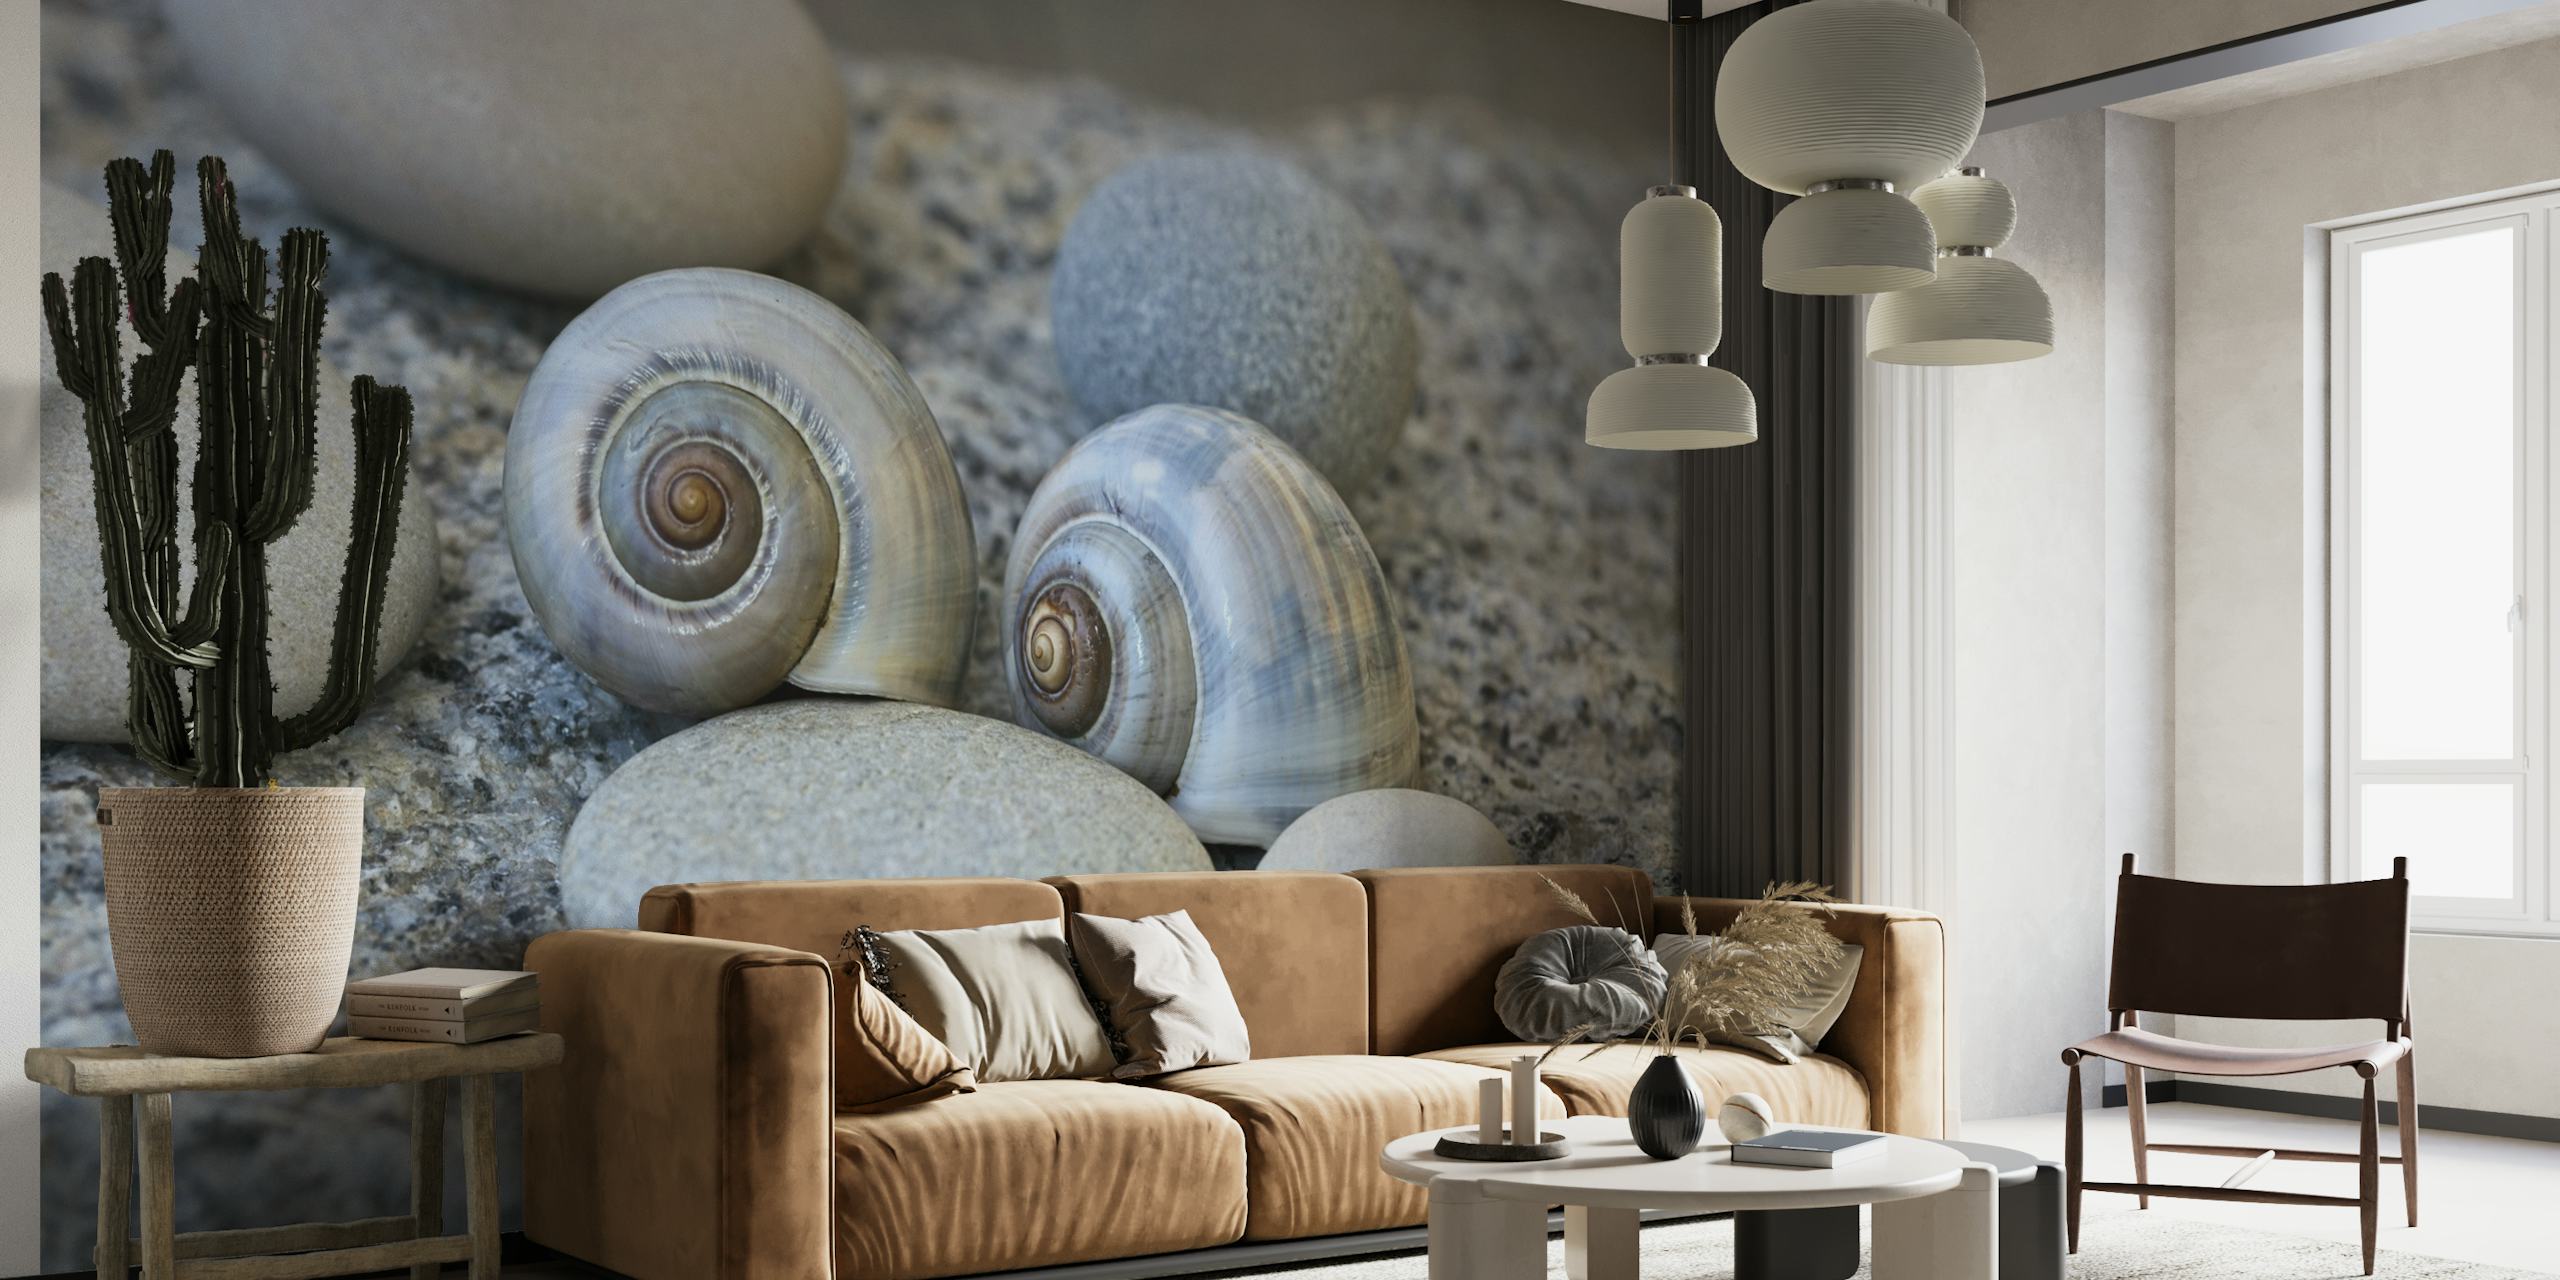 Zen pebble and shell still life wall mural depicting a calm, balanced arrangement.